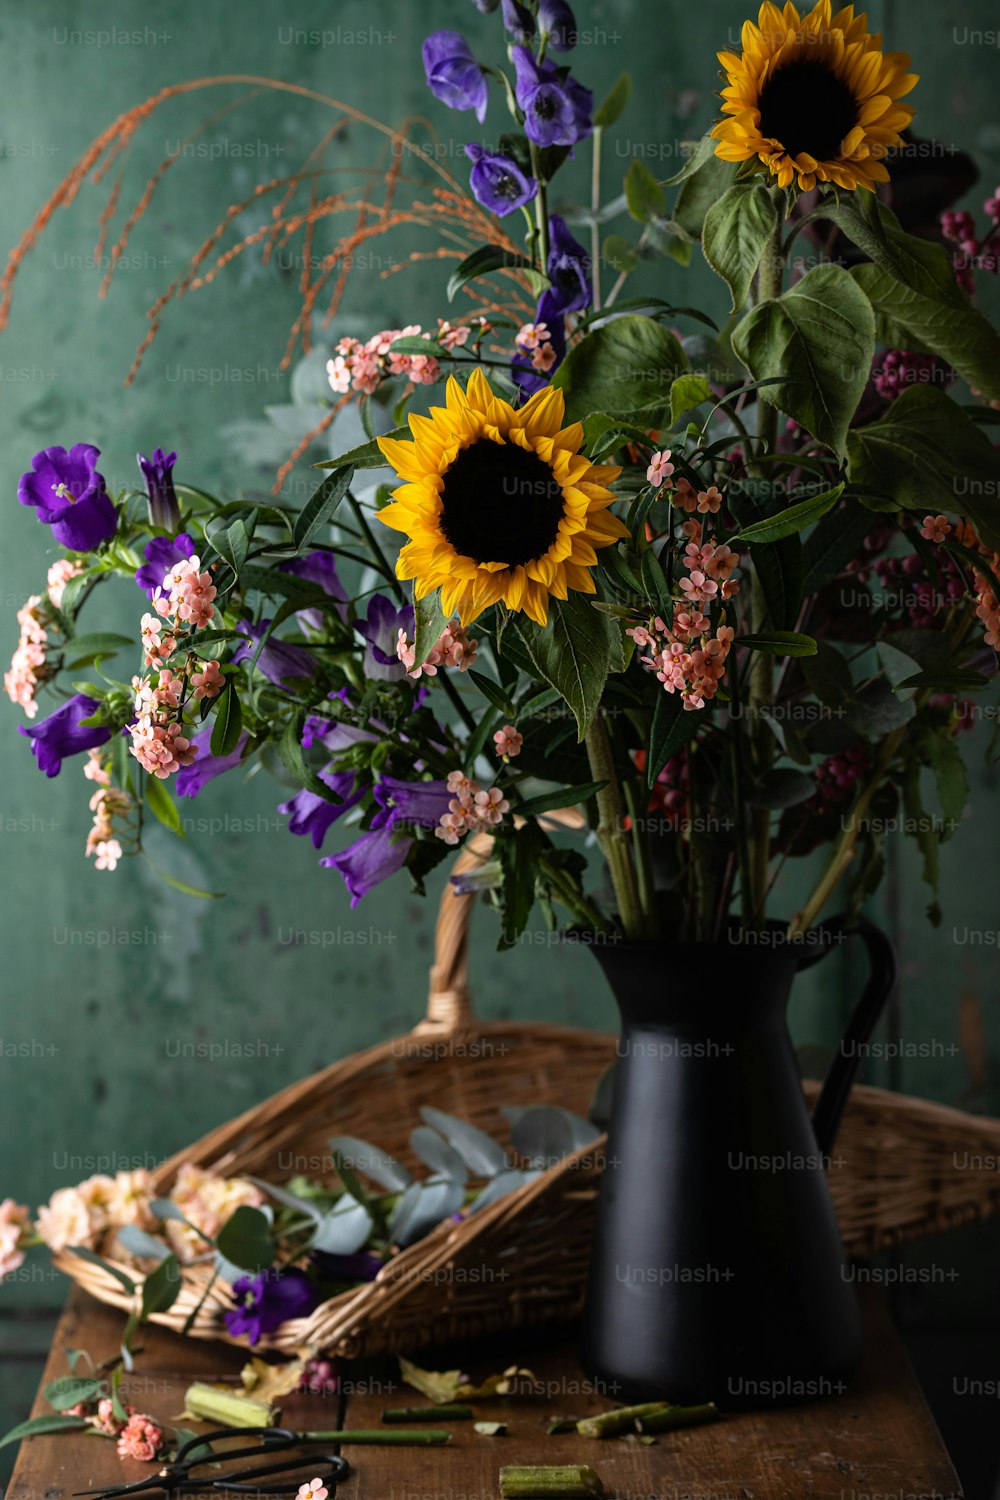 Un vase noir rempli de nombreuses fleurs violettes et jaunes